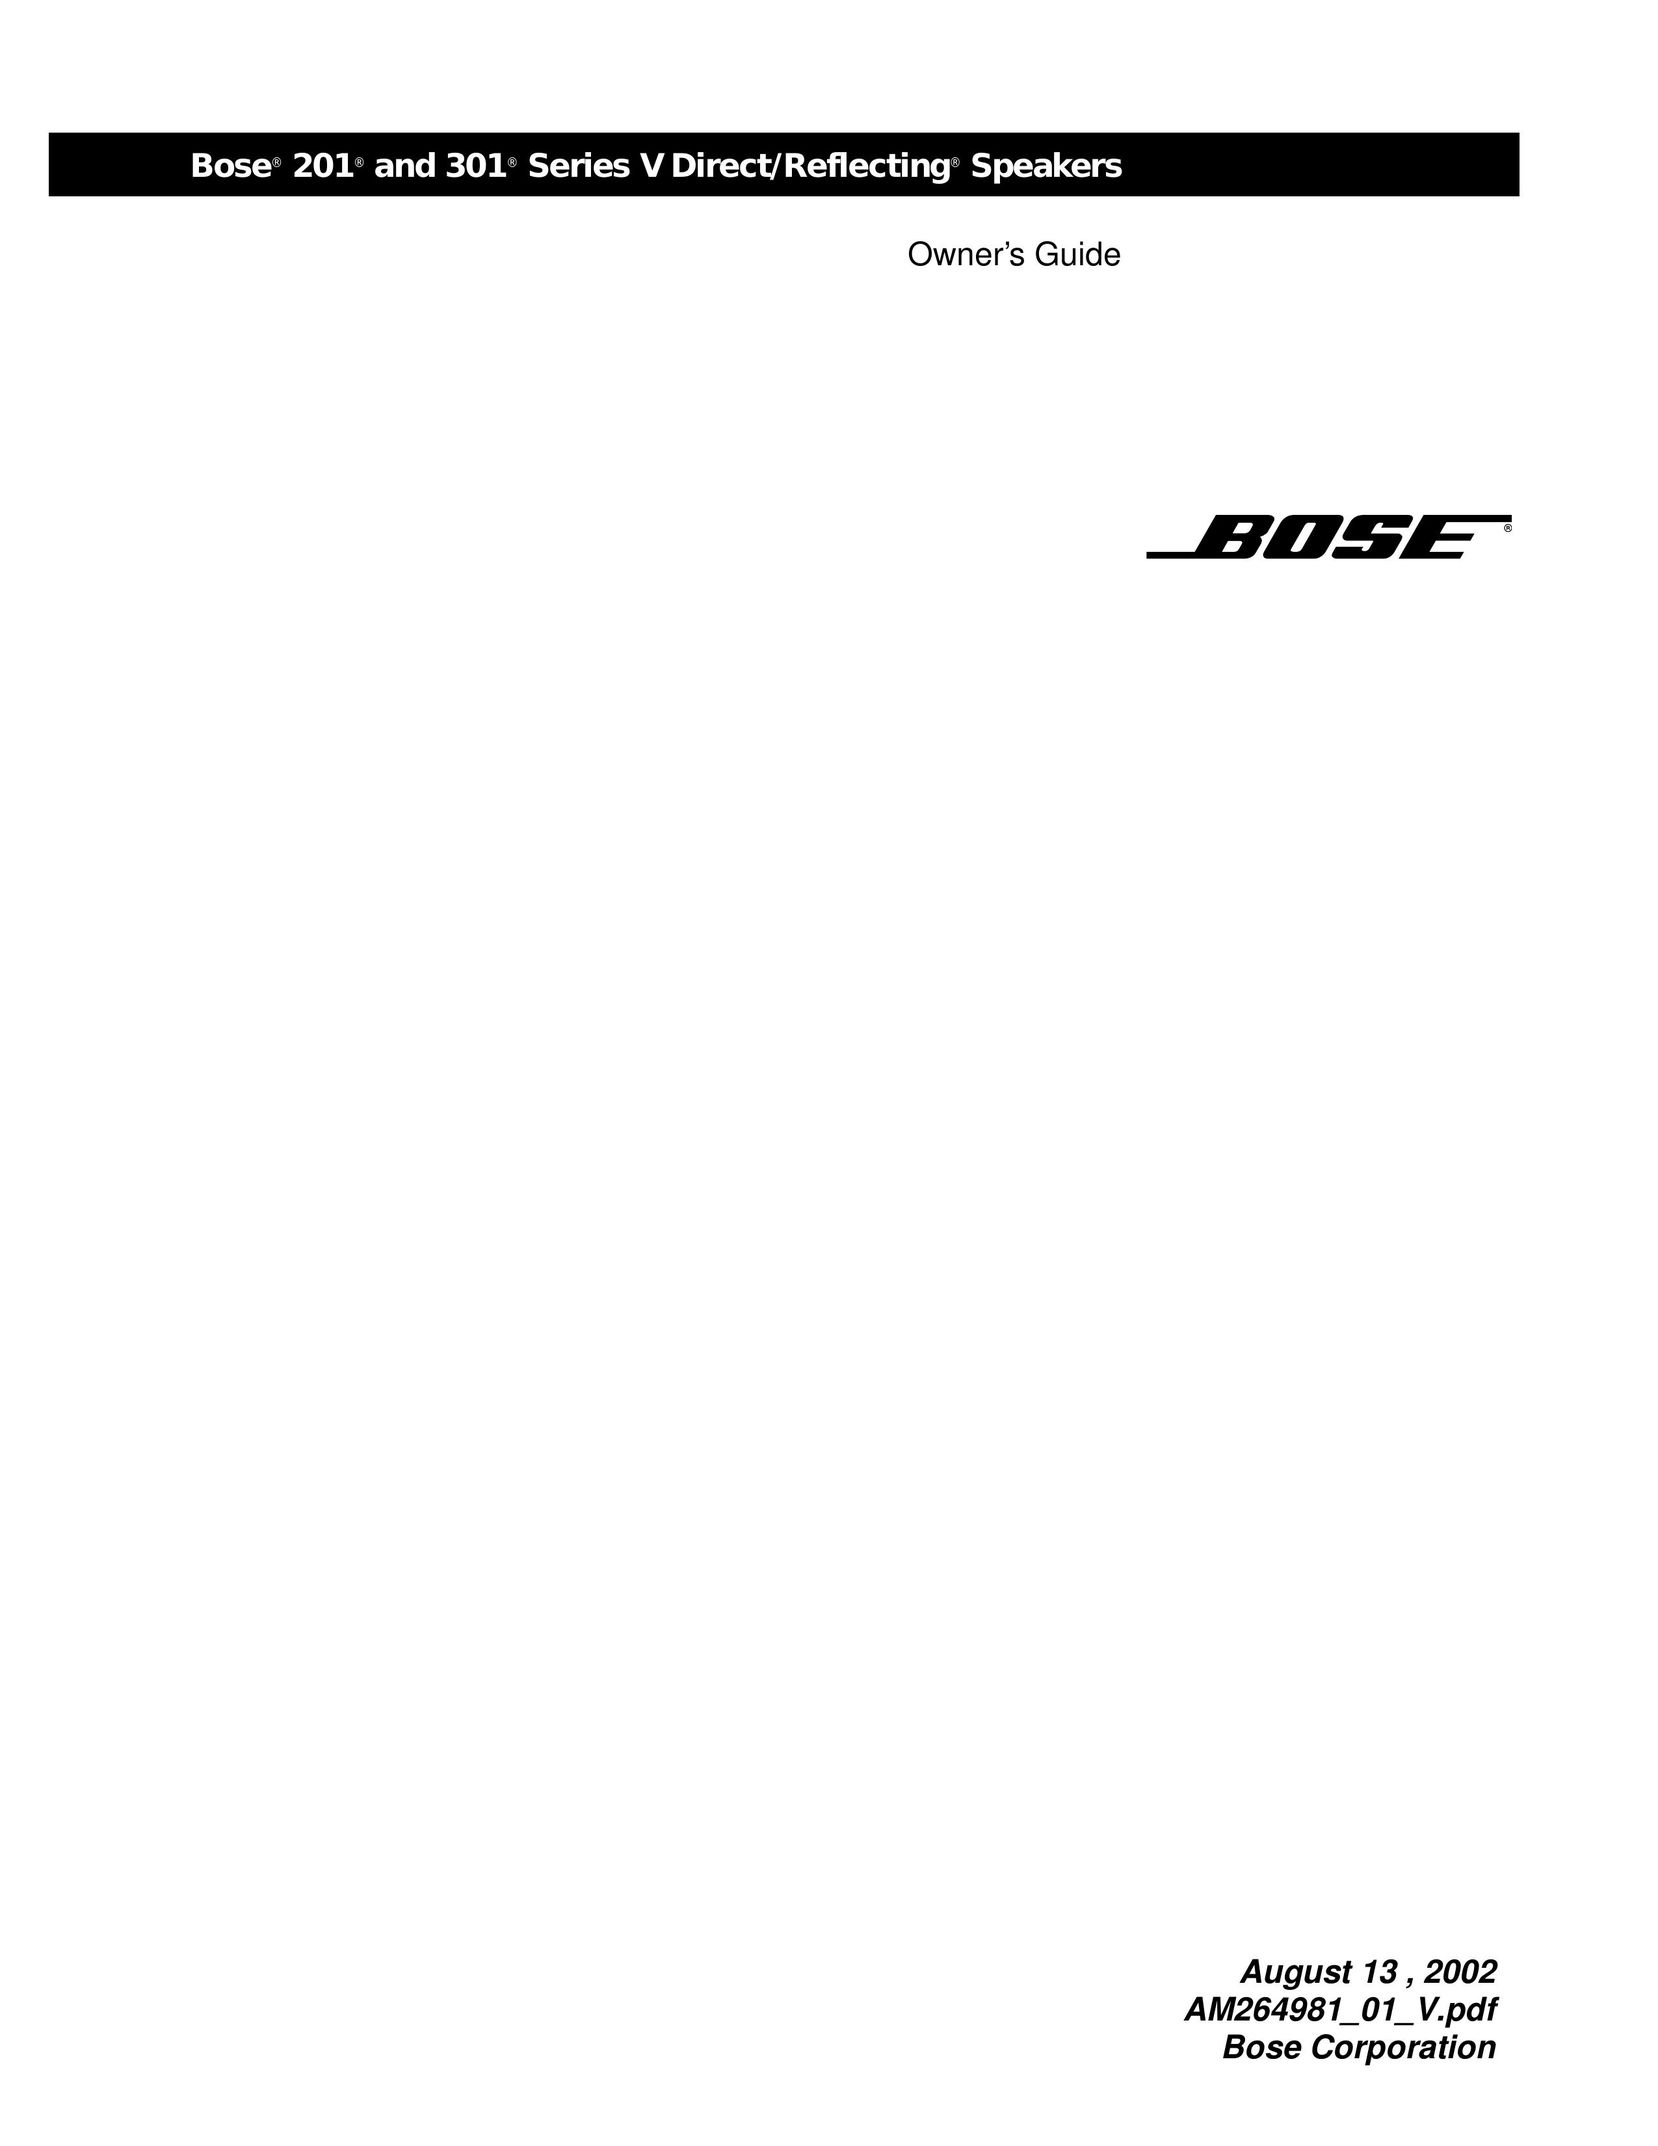 Bose 201 Car Speaker User Manual